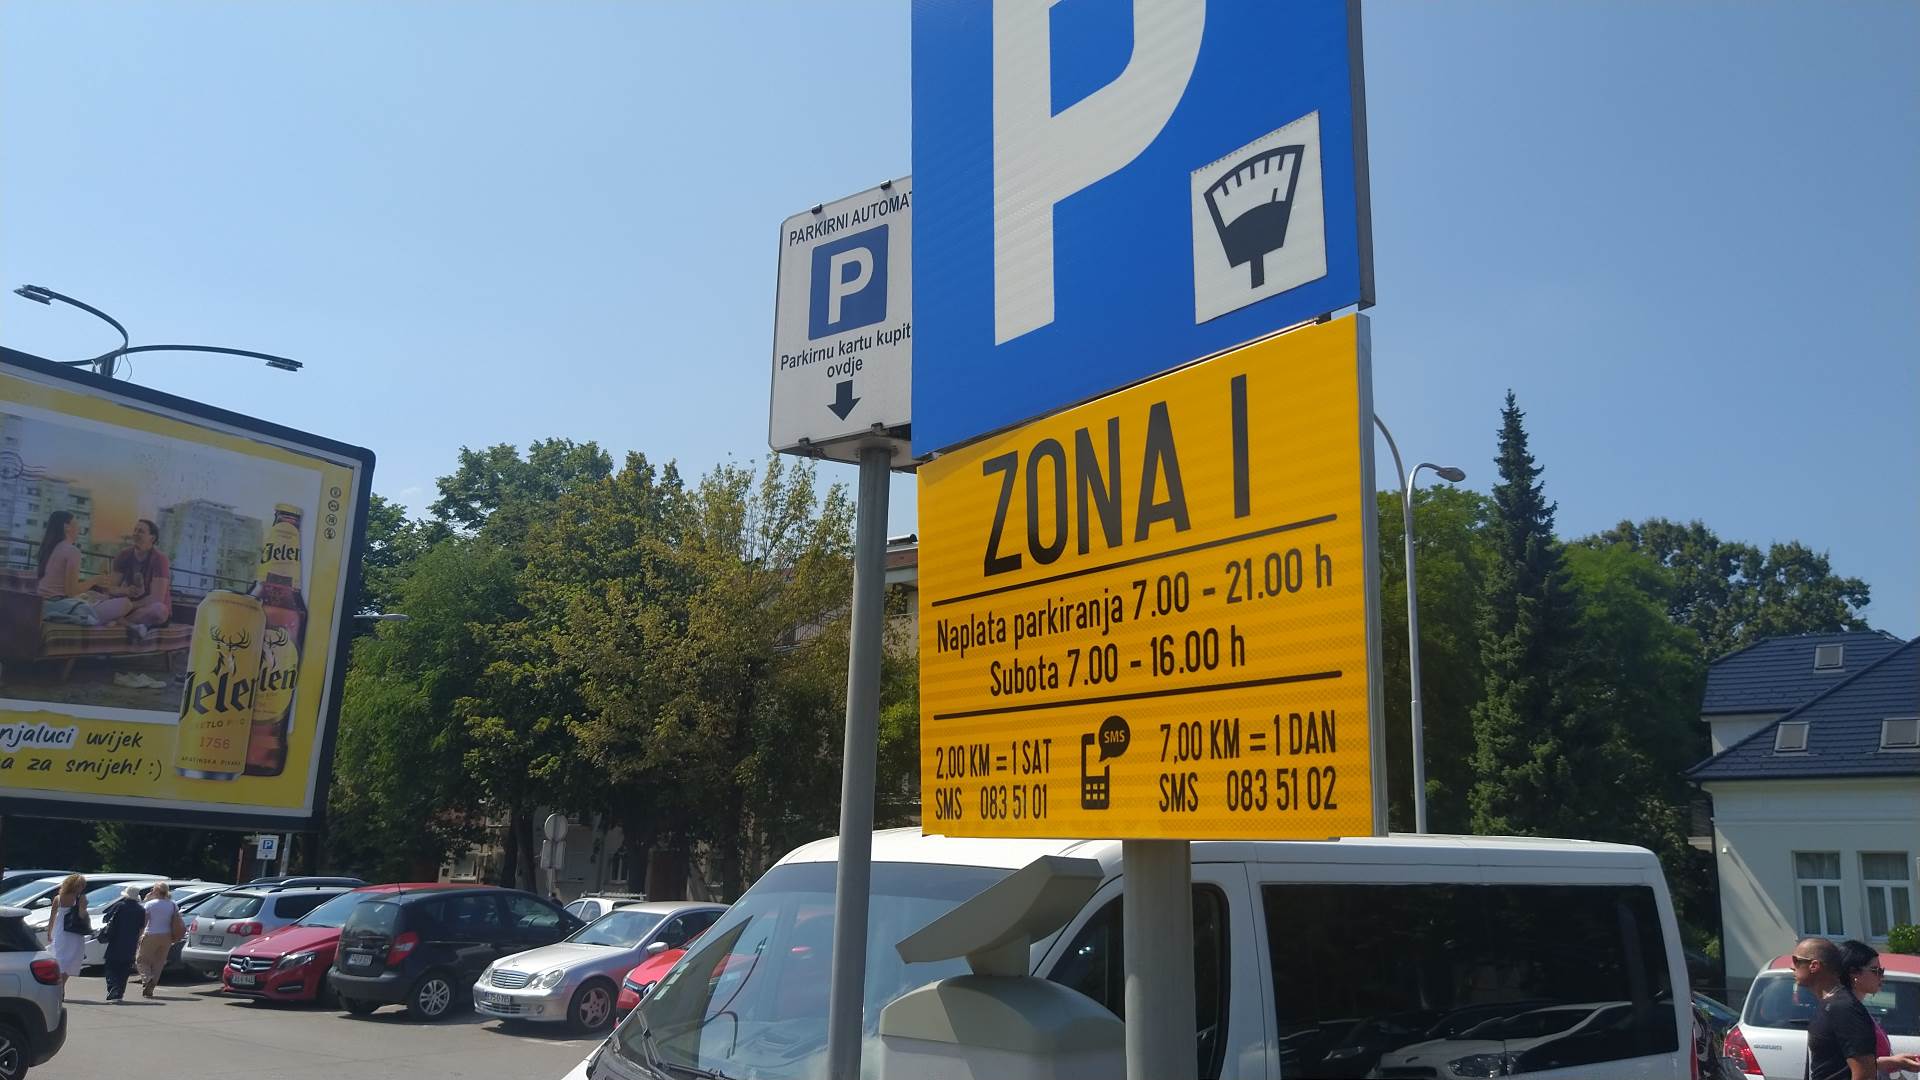  Cijene parkinga u Banjaluci 